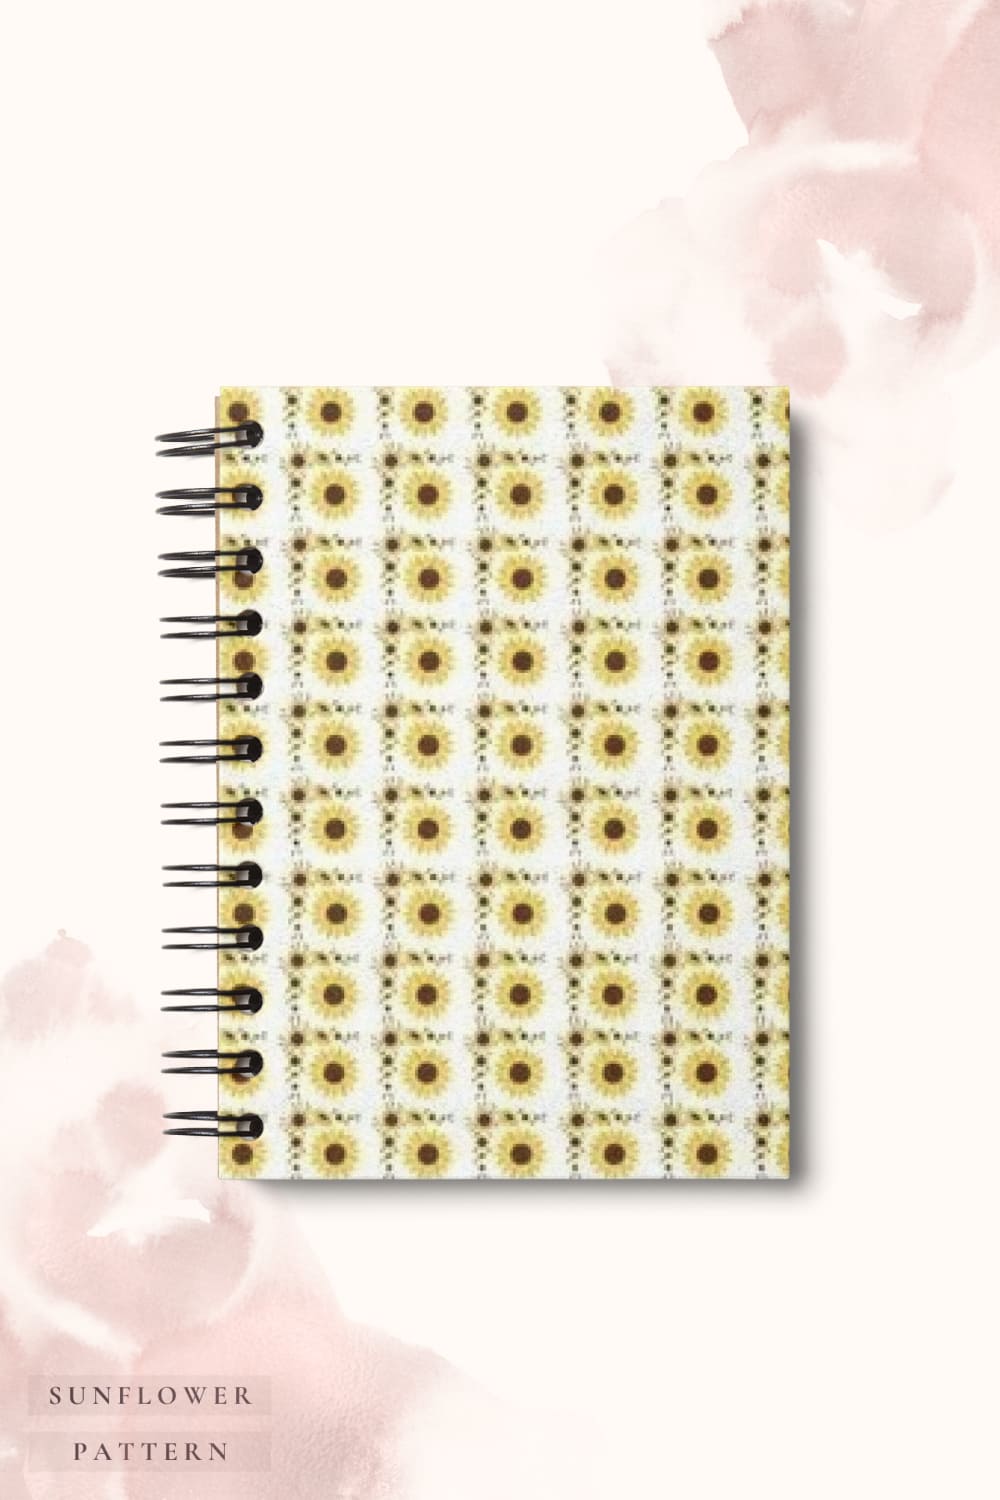 Sunflower Pattern, Sunflower Background - Pinterest.